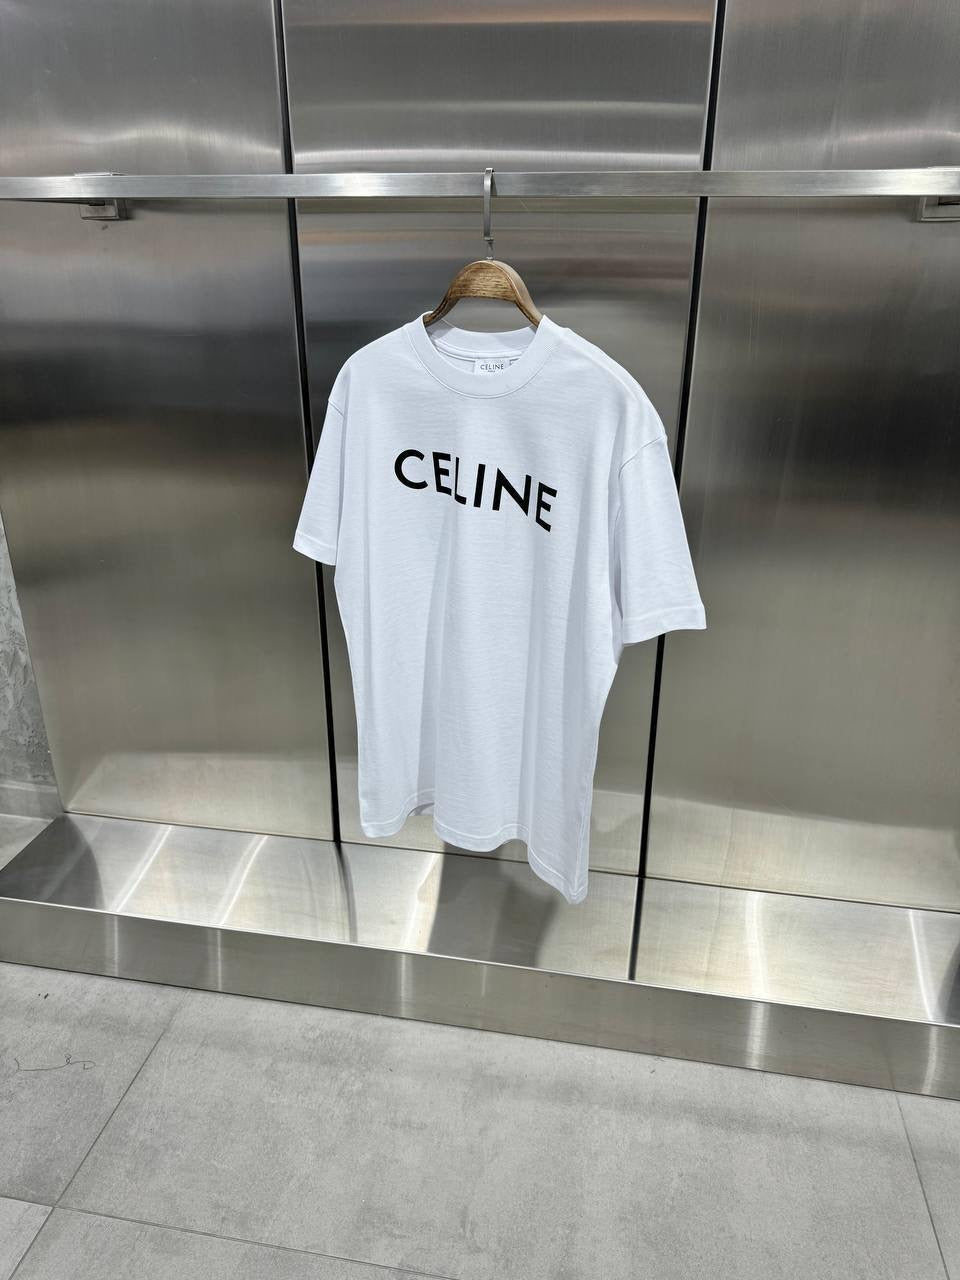 Celine T-shirt